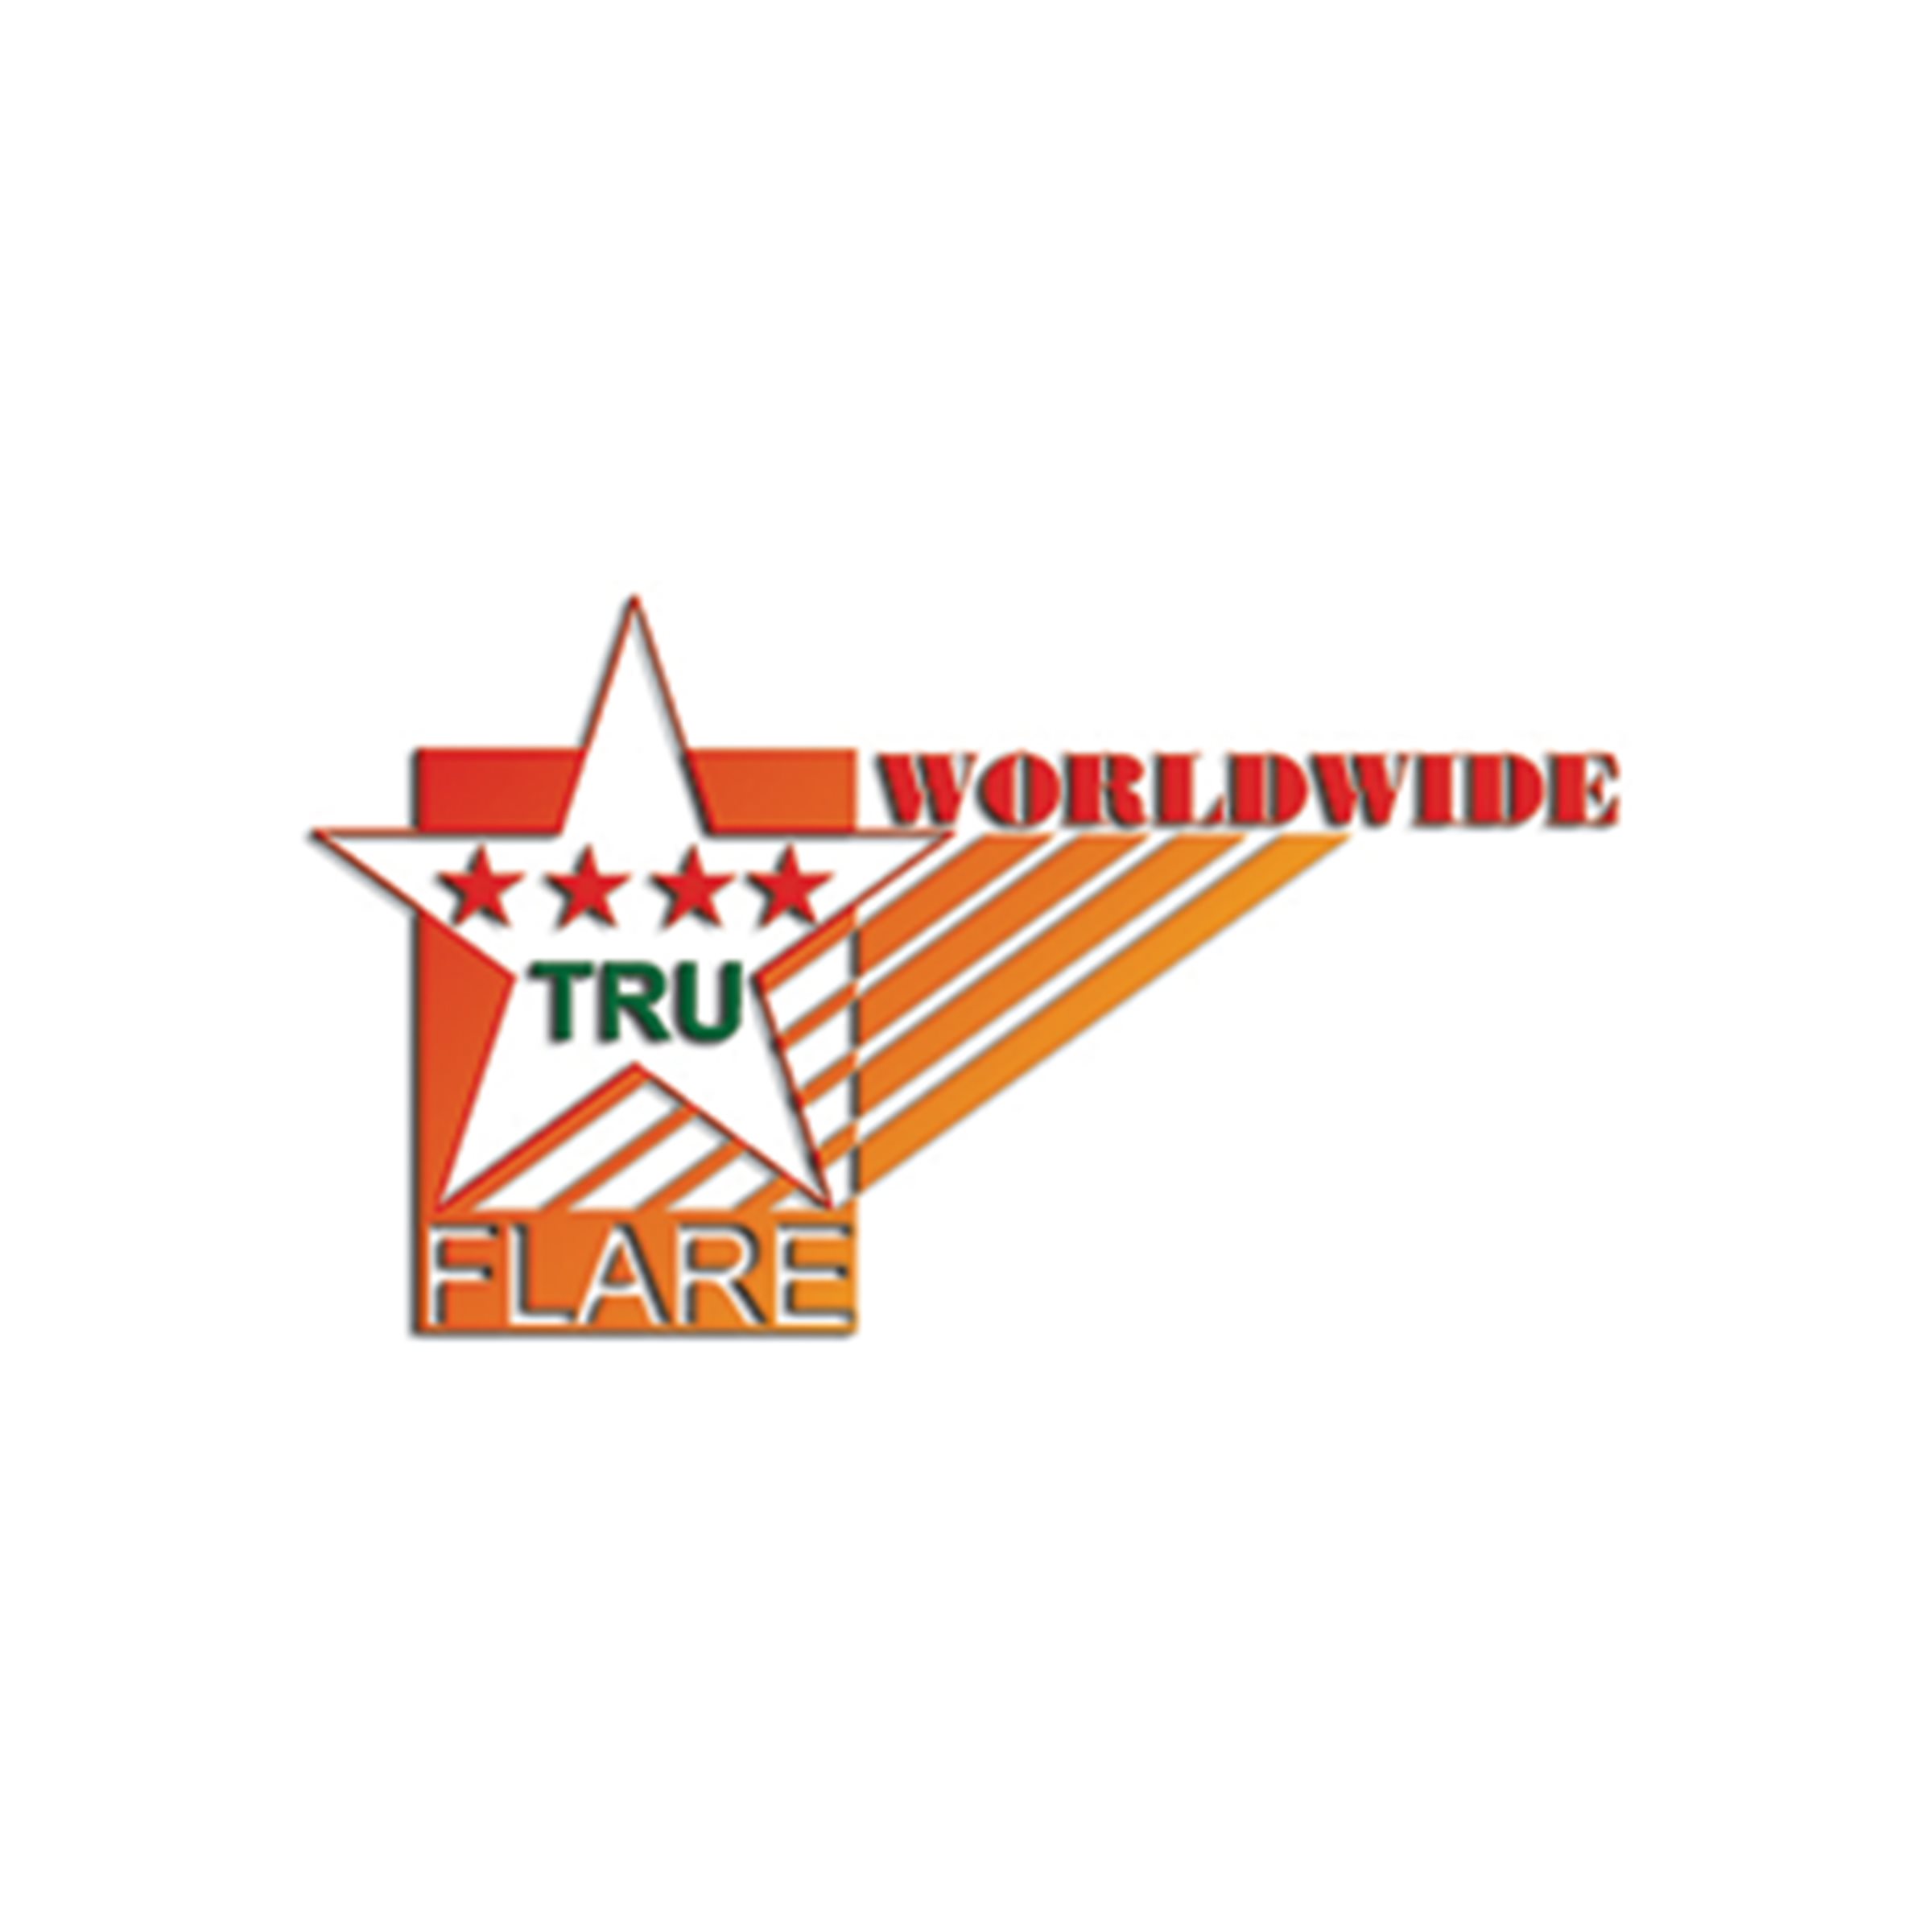 A_Truflare_logo